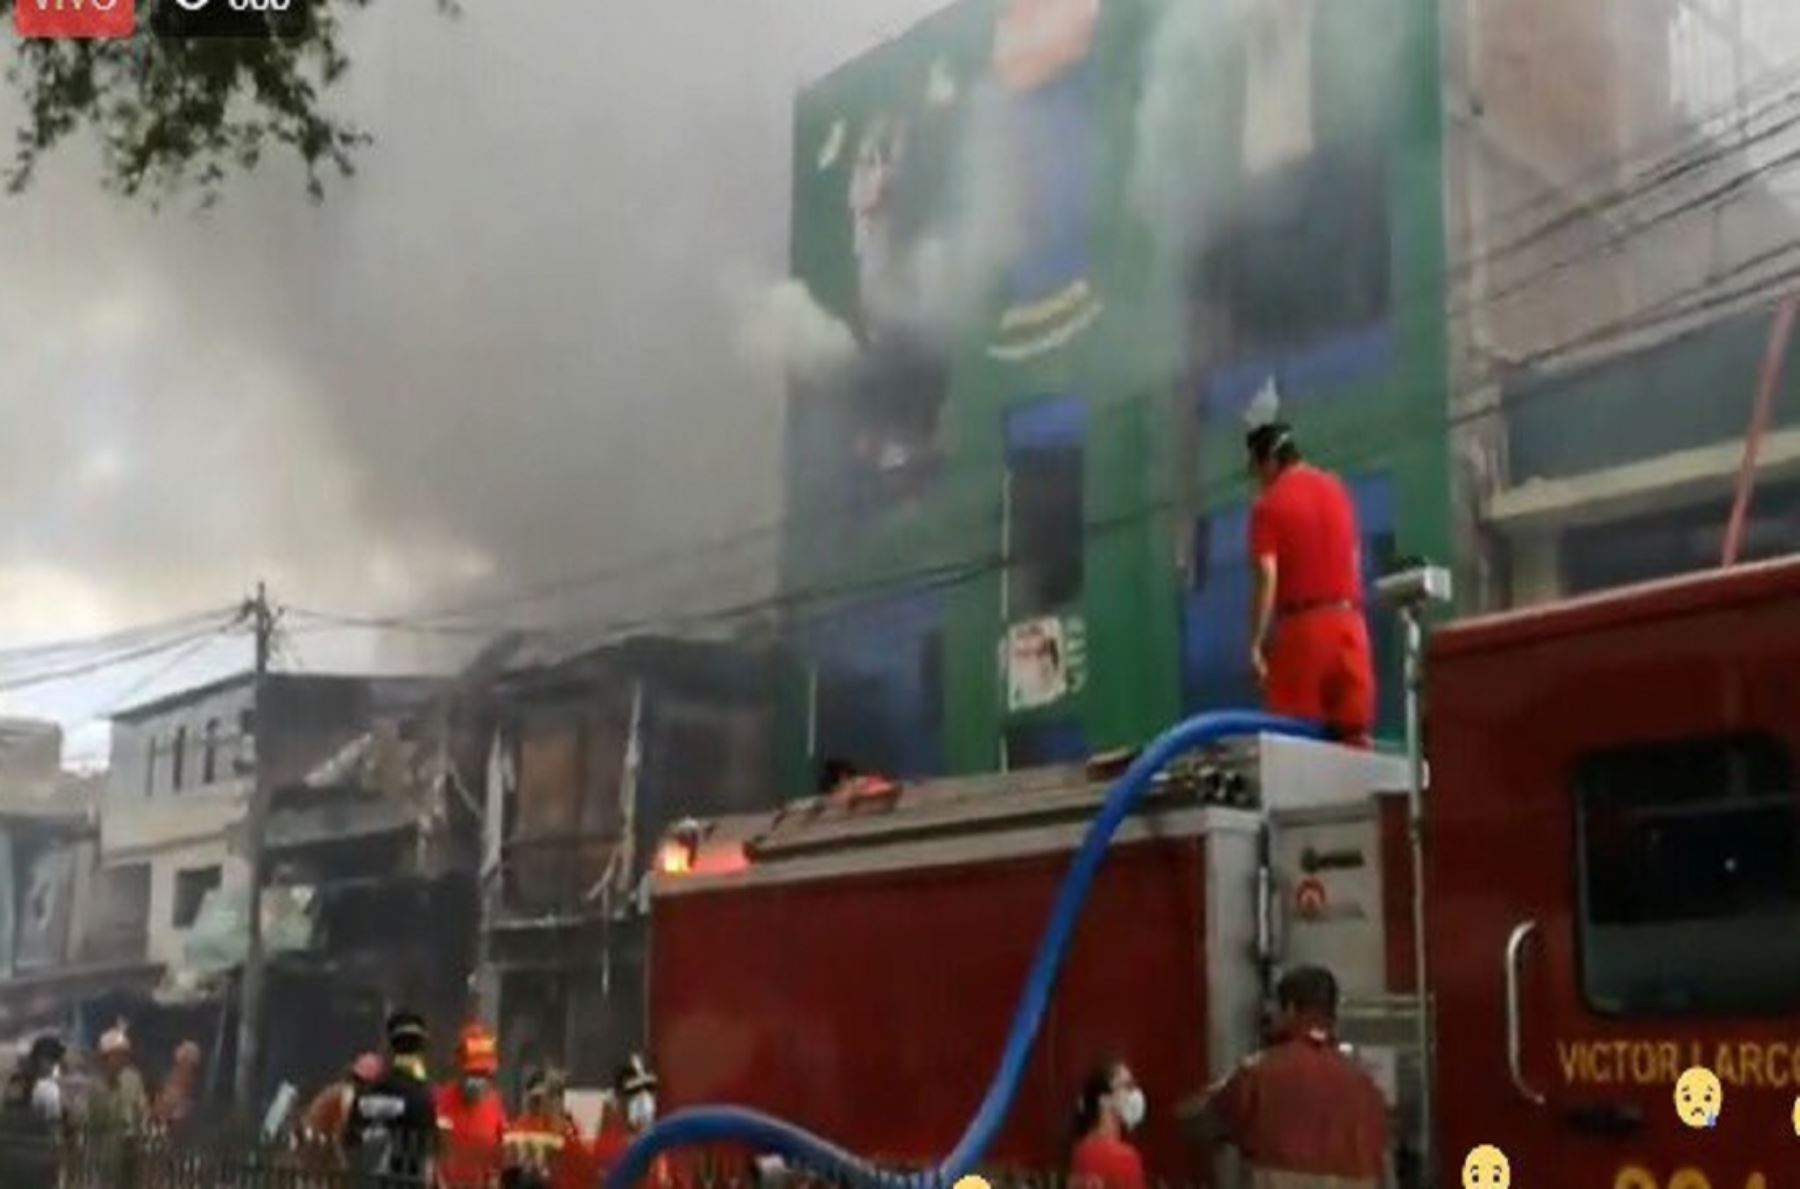 Más de 80 bomberos lucharon para que el fuego no afecte edificaciones aledañas, pese a la falta de agua que enfrentaron.